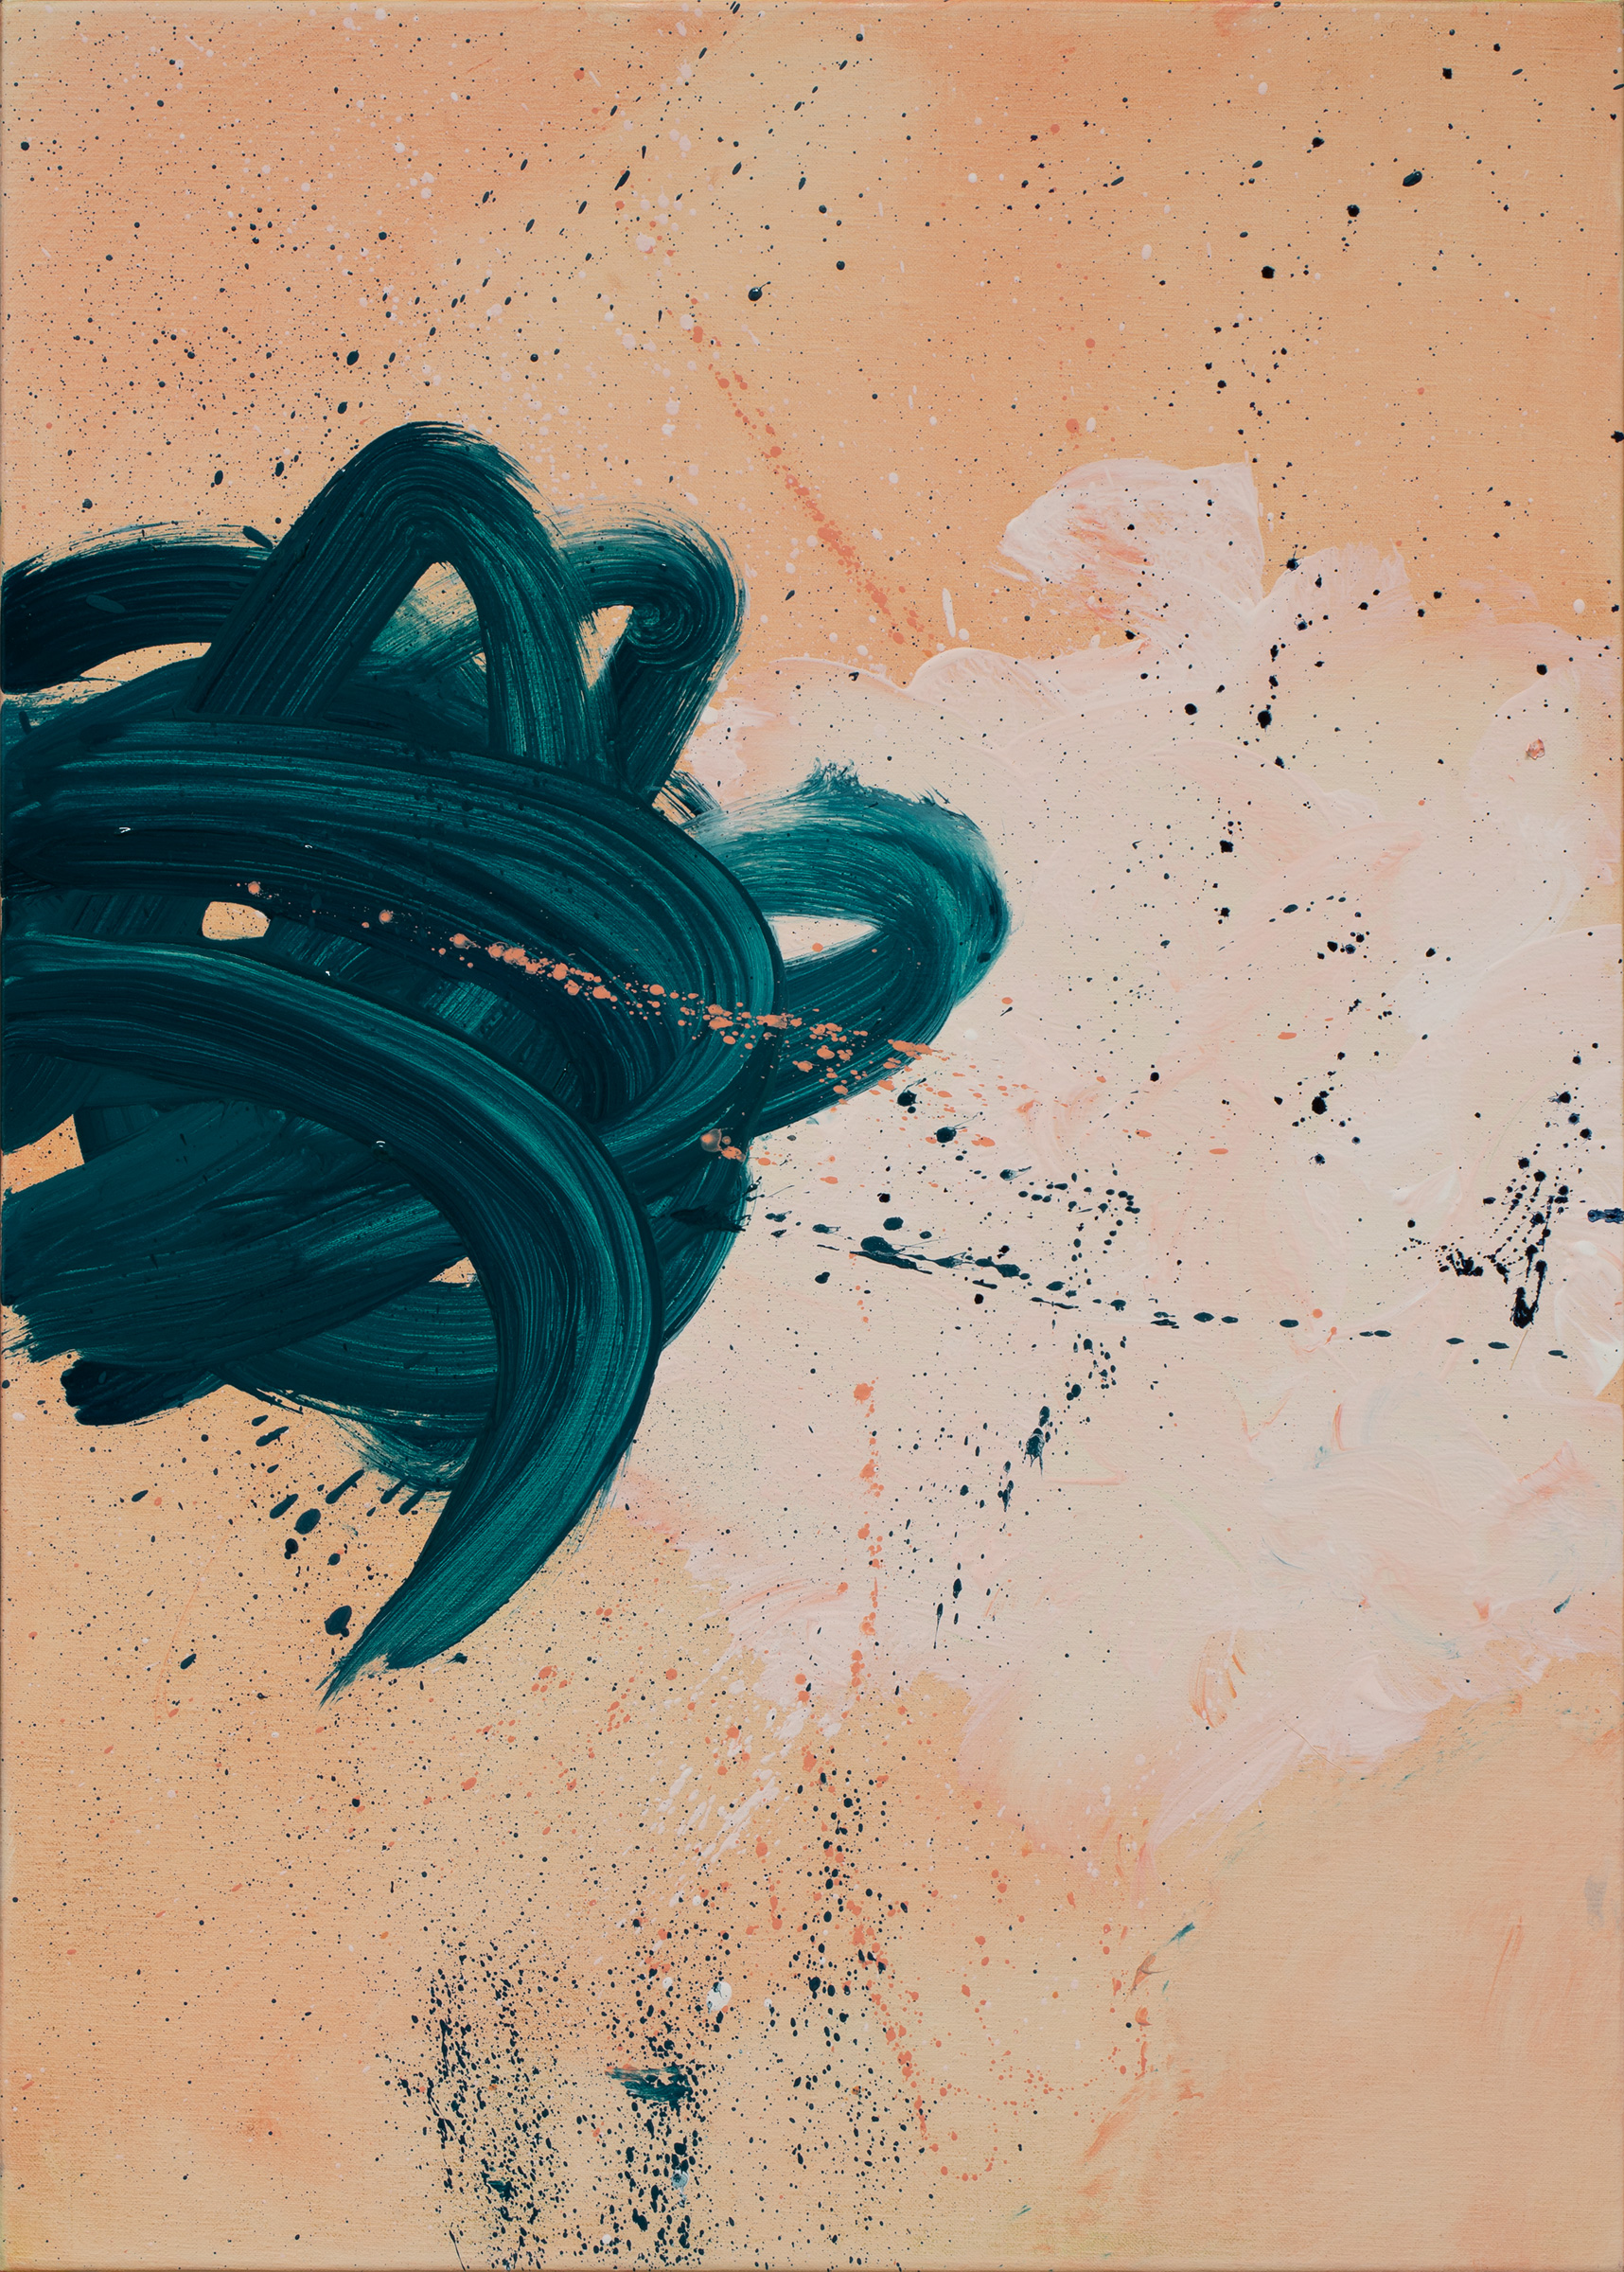 Cercando nuvole dentro di me n. 6, 2022 | Oil on canvas, 70 x 50 cm